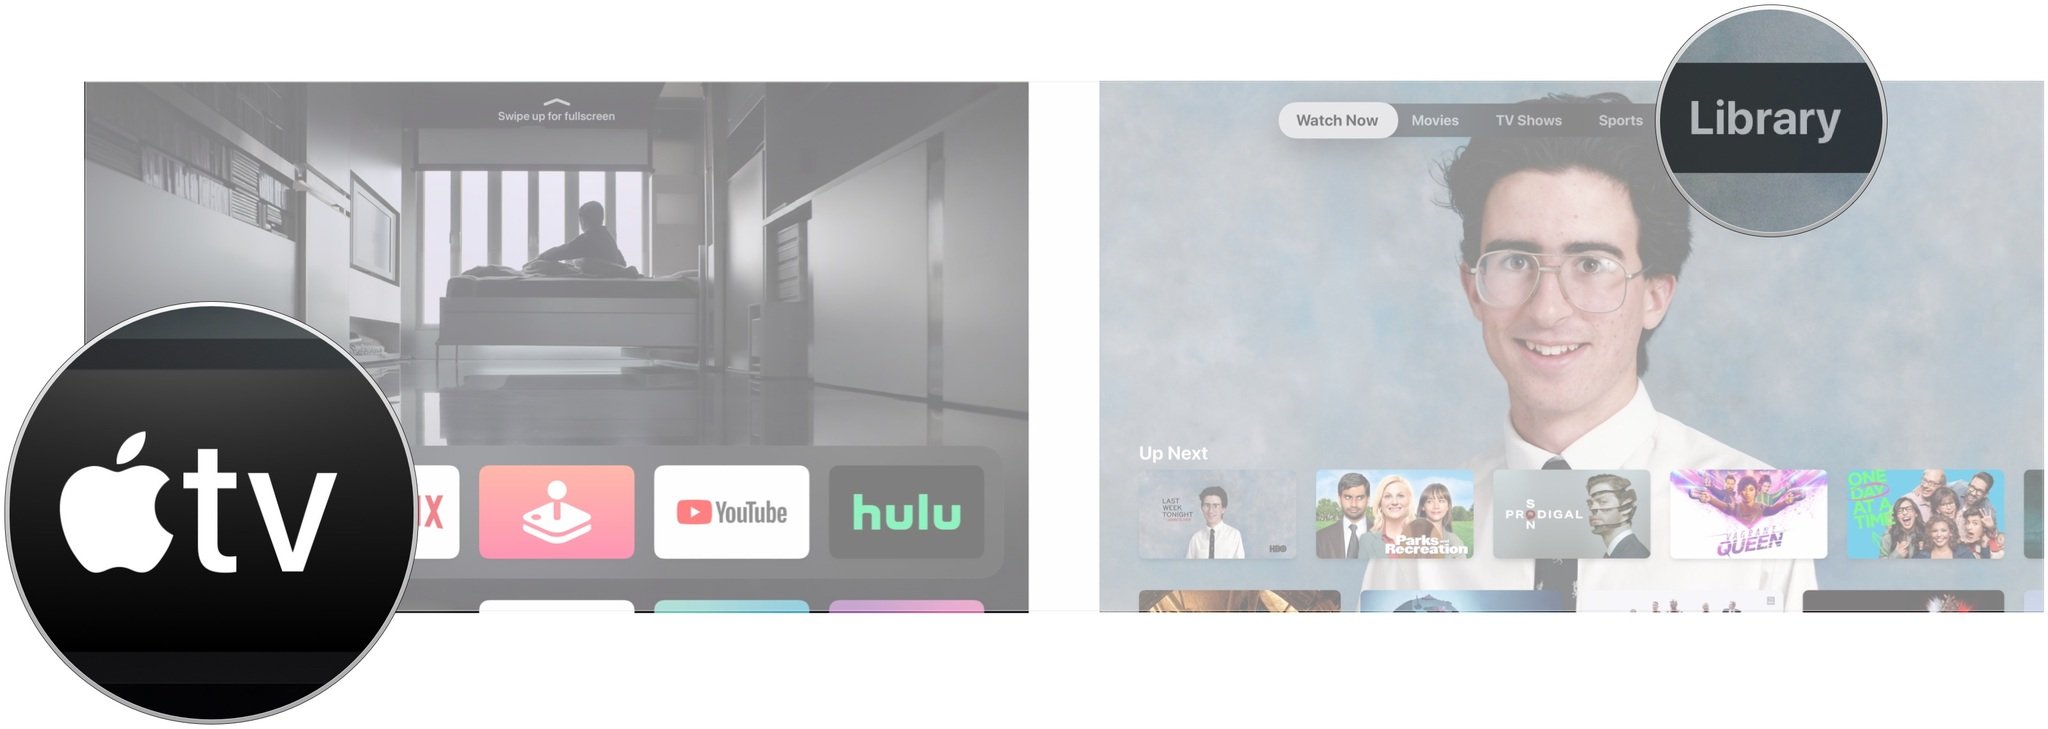 Воспроизведение видео из библиотеки на Apple TV, показывающее, как открыть приложение TV и перейти в раздел библиотеки.